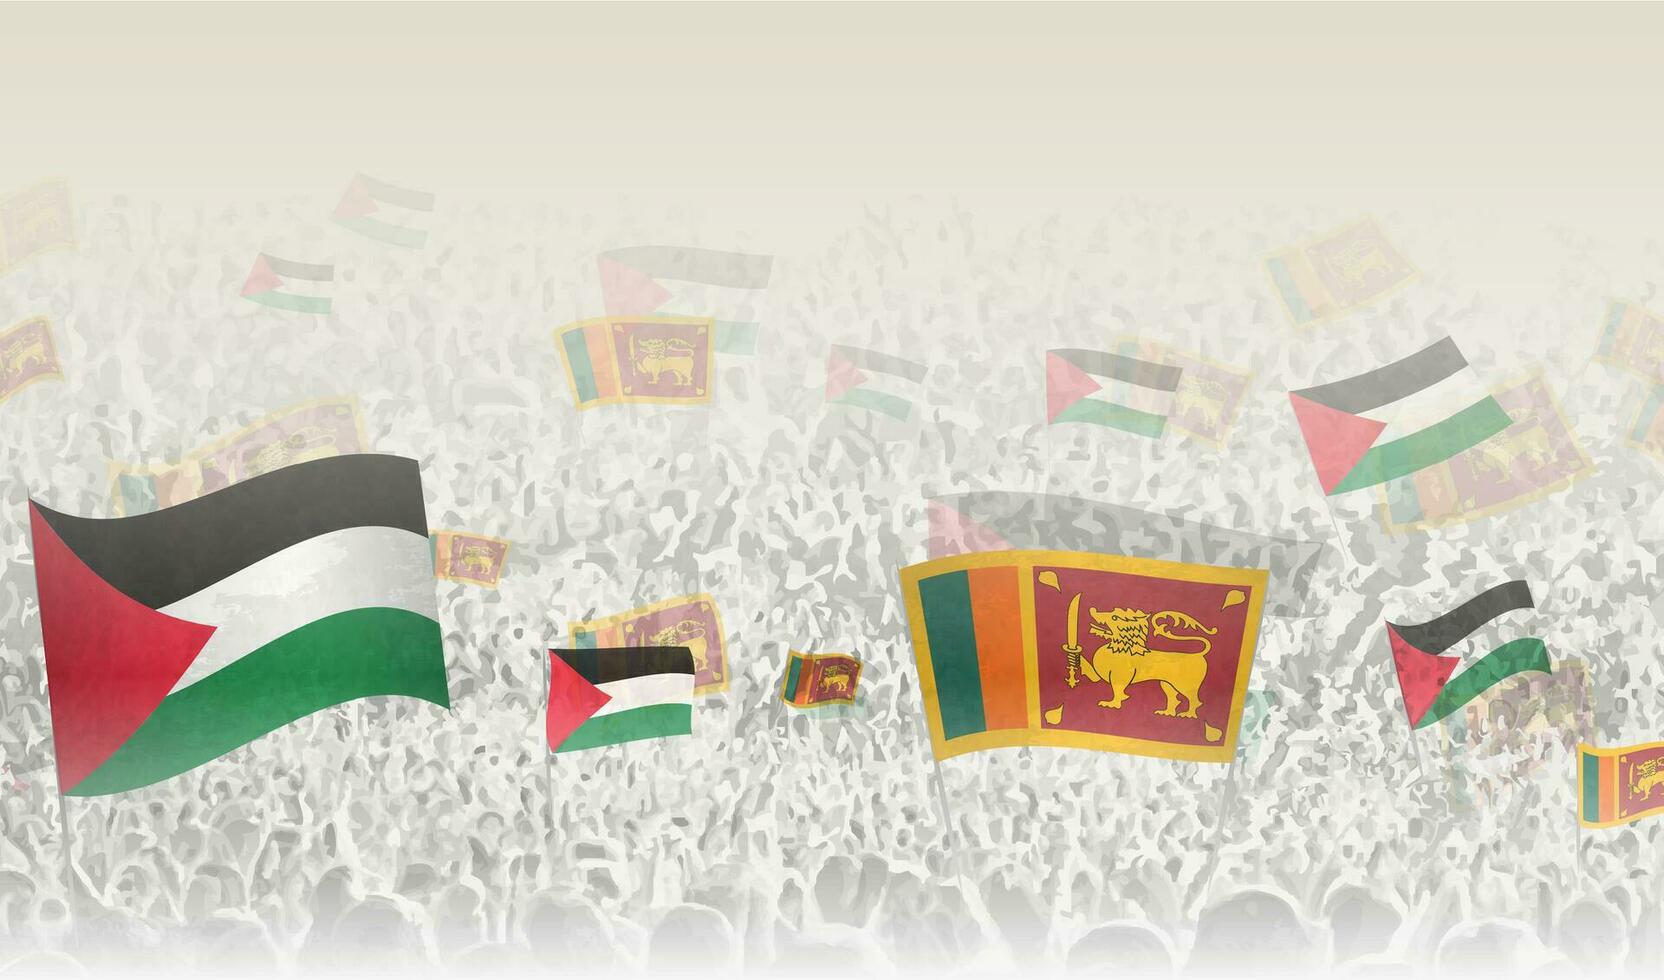 Palestine et sri lanka drapeaux dans une foule de applaudissement personnes. vecteur